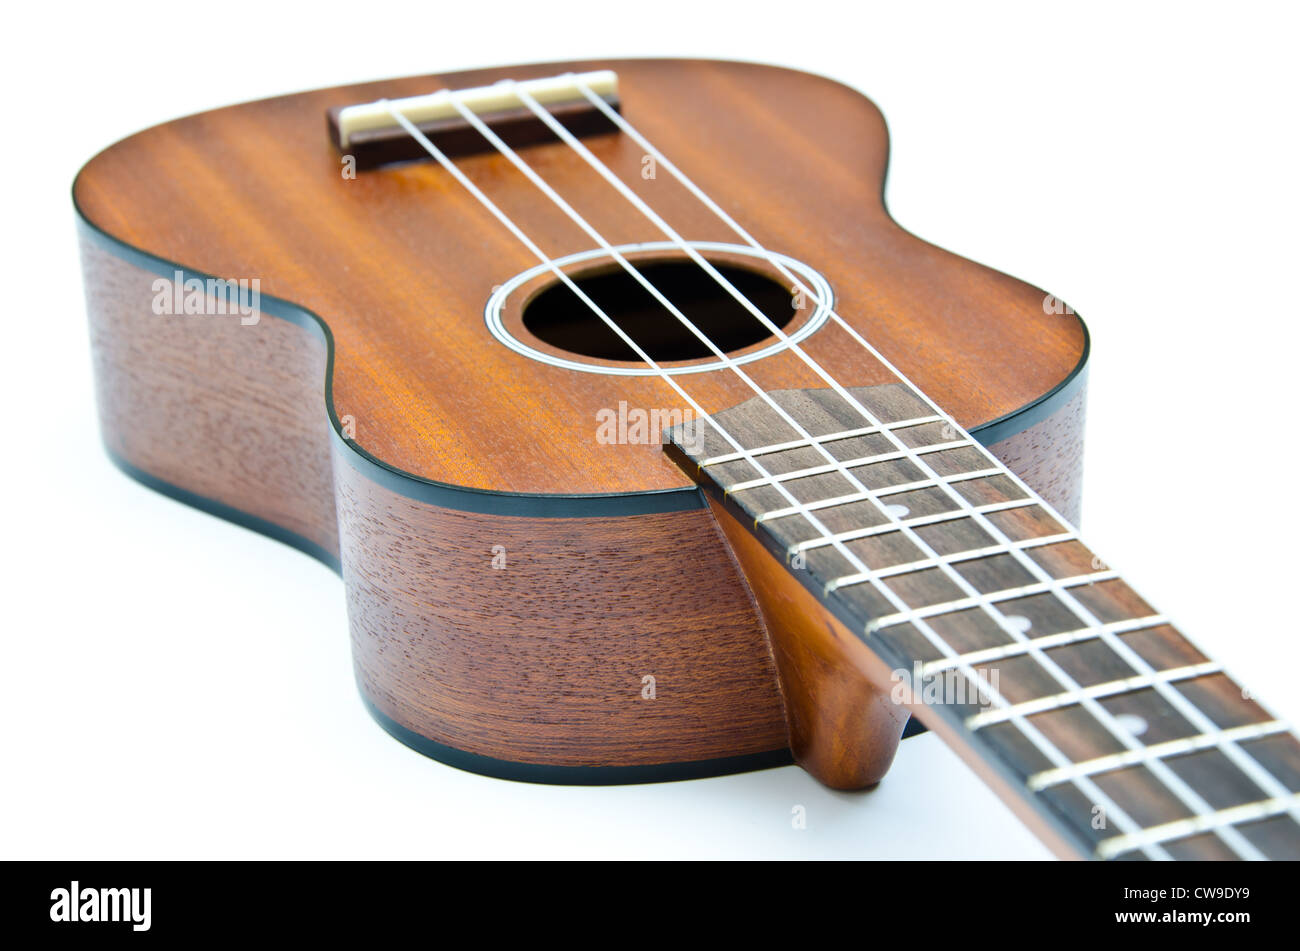 ukulele acoustic hawaii Stock Photo